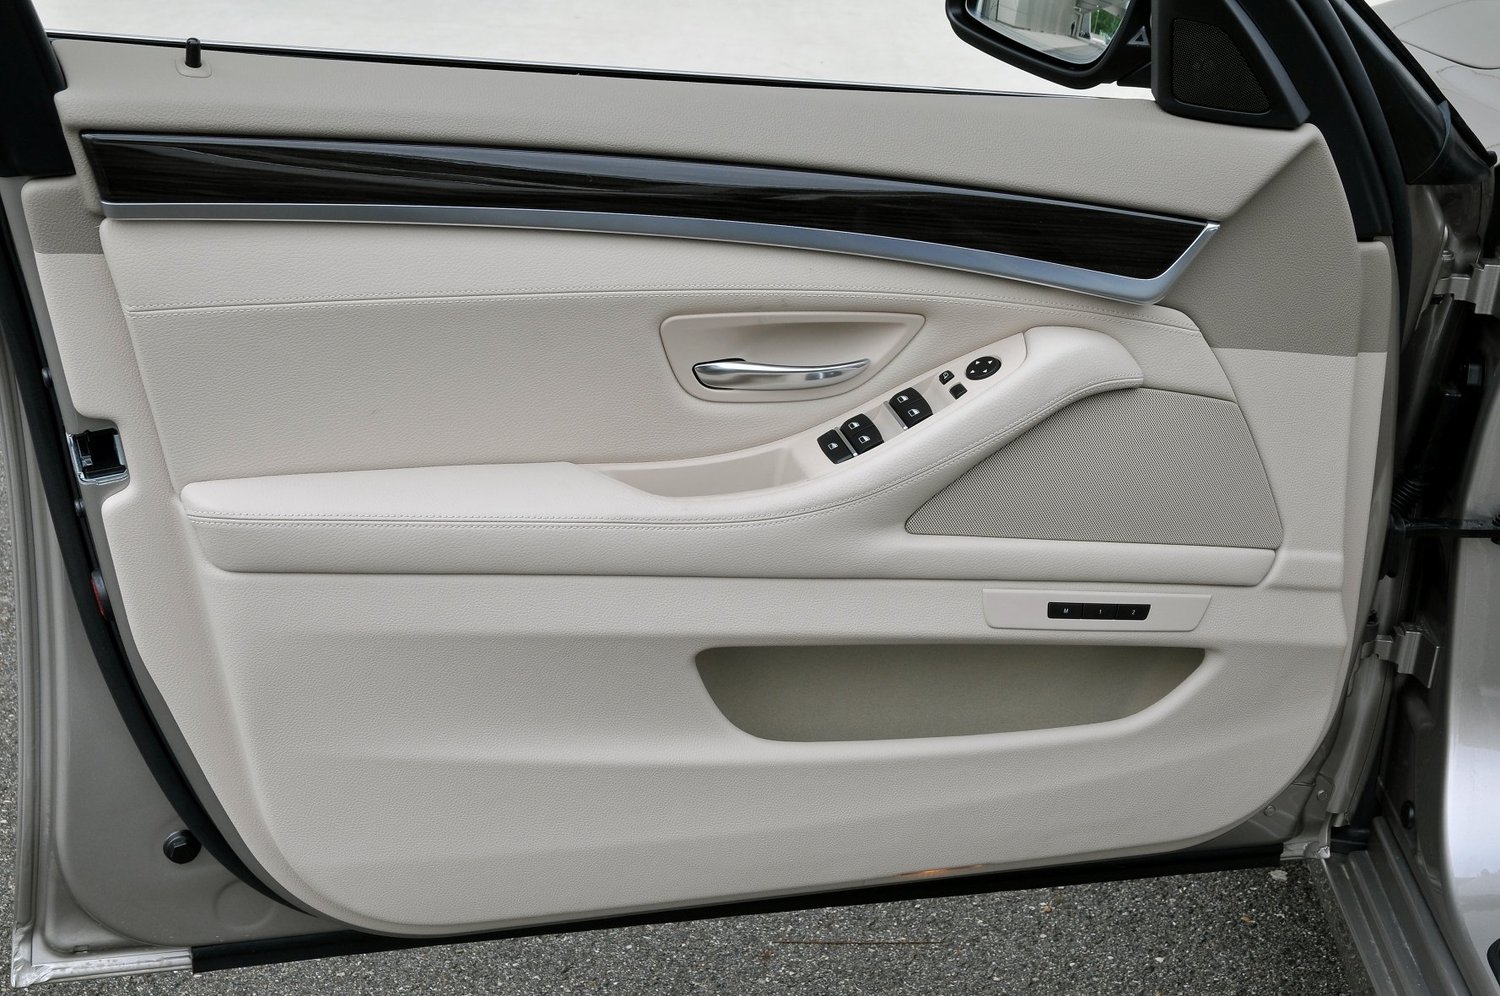 универсал BMW 5er 2010 - 2013г выпуска модификация 2.5 AT (204 л.с.)